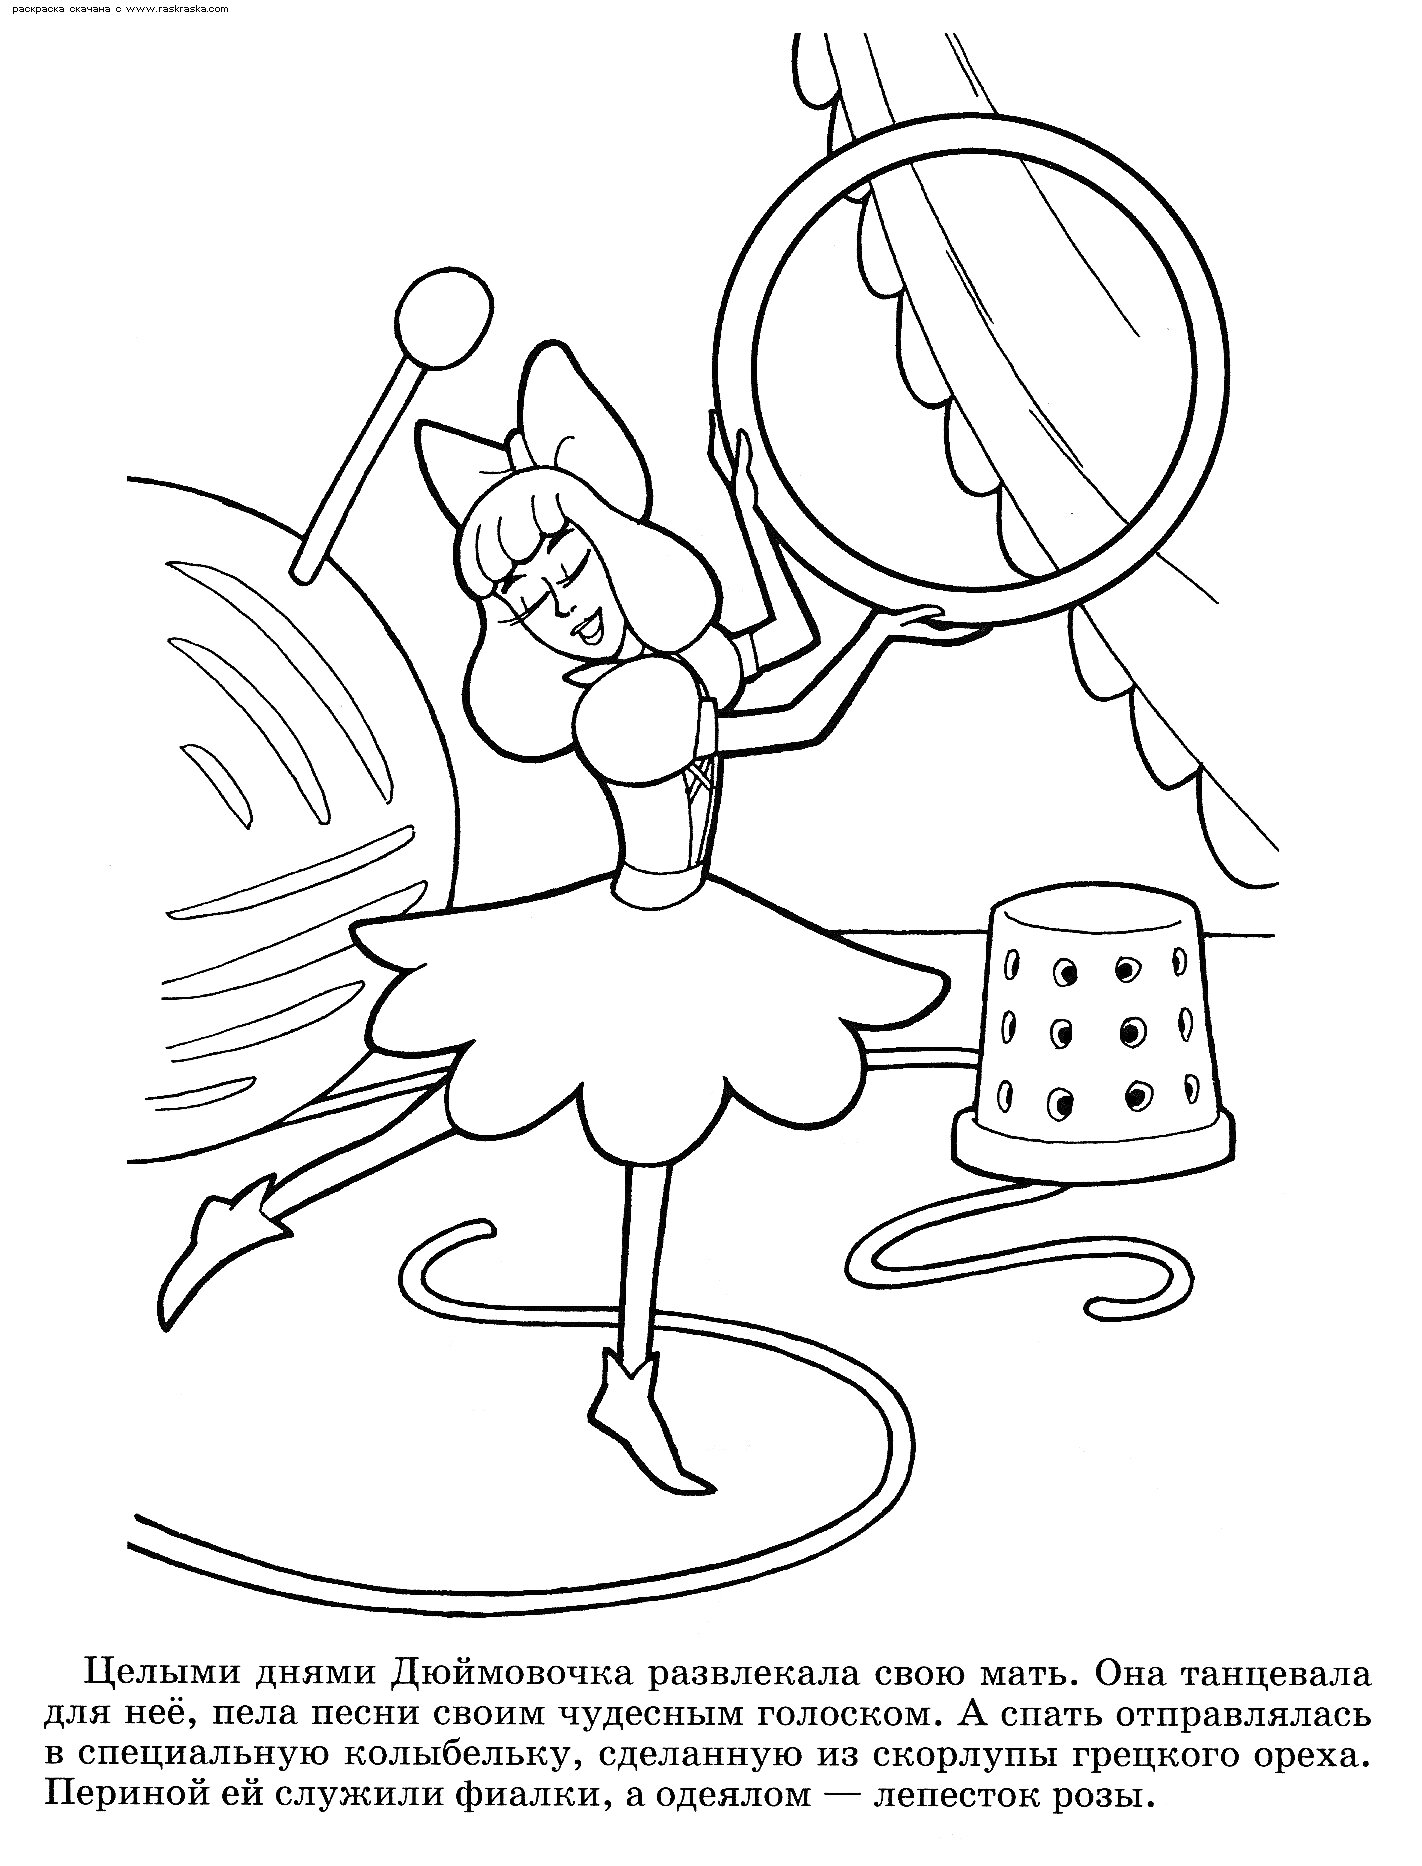 Раскраска Дюймовочка танцует на подоконнике, рядом с ней катушка ниток, иголка, наперсток и большая пуговица